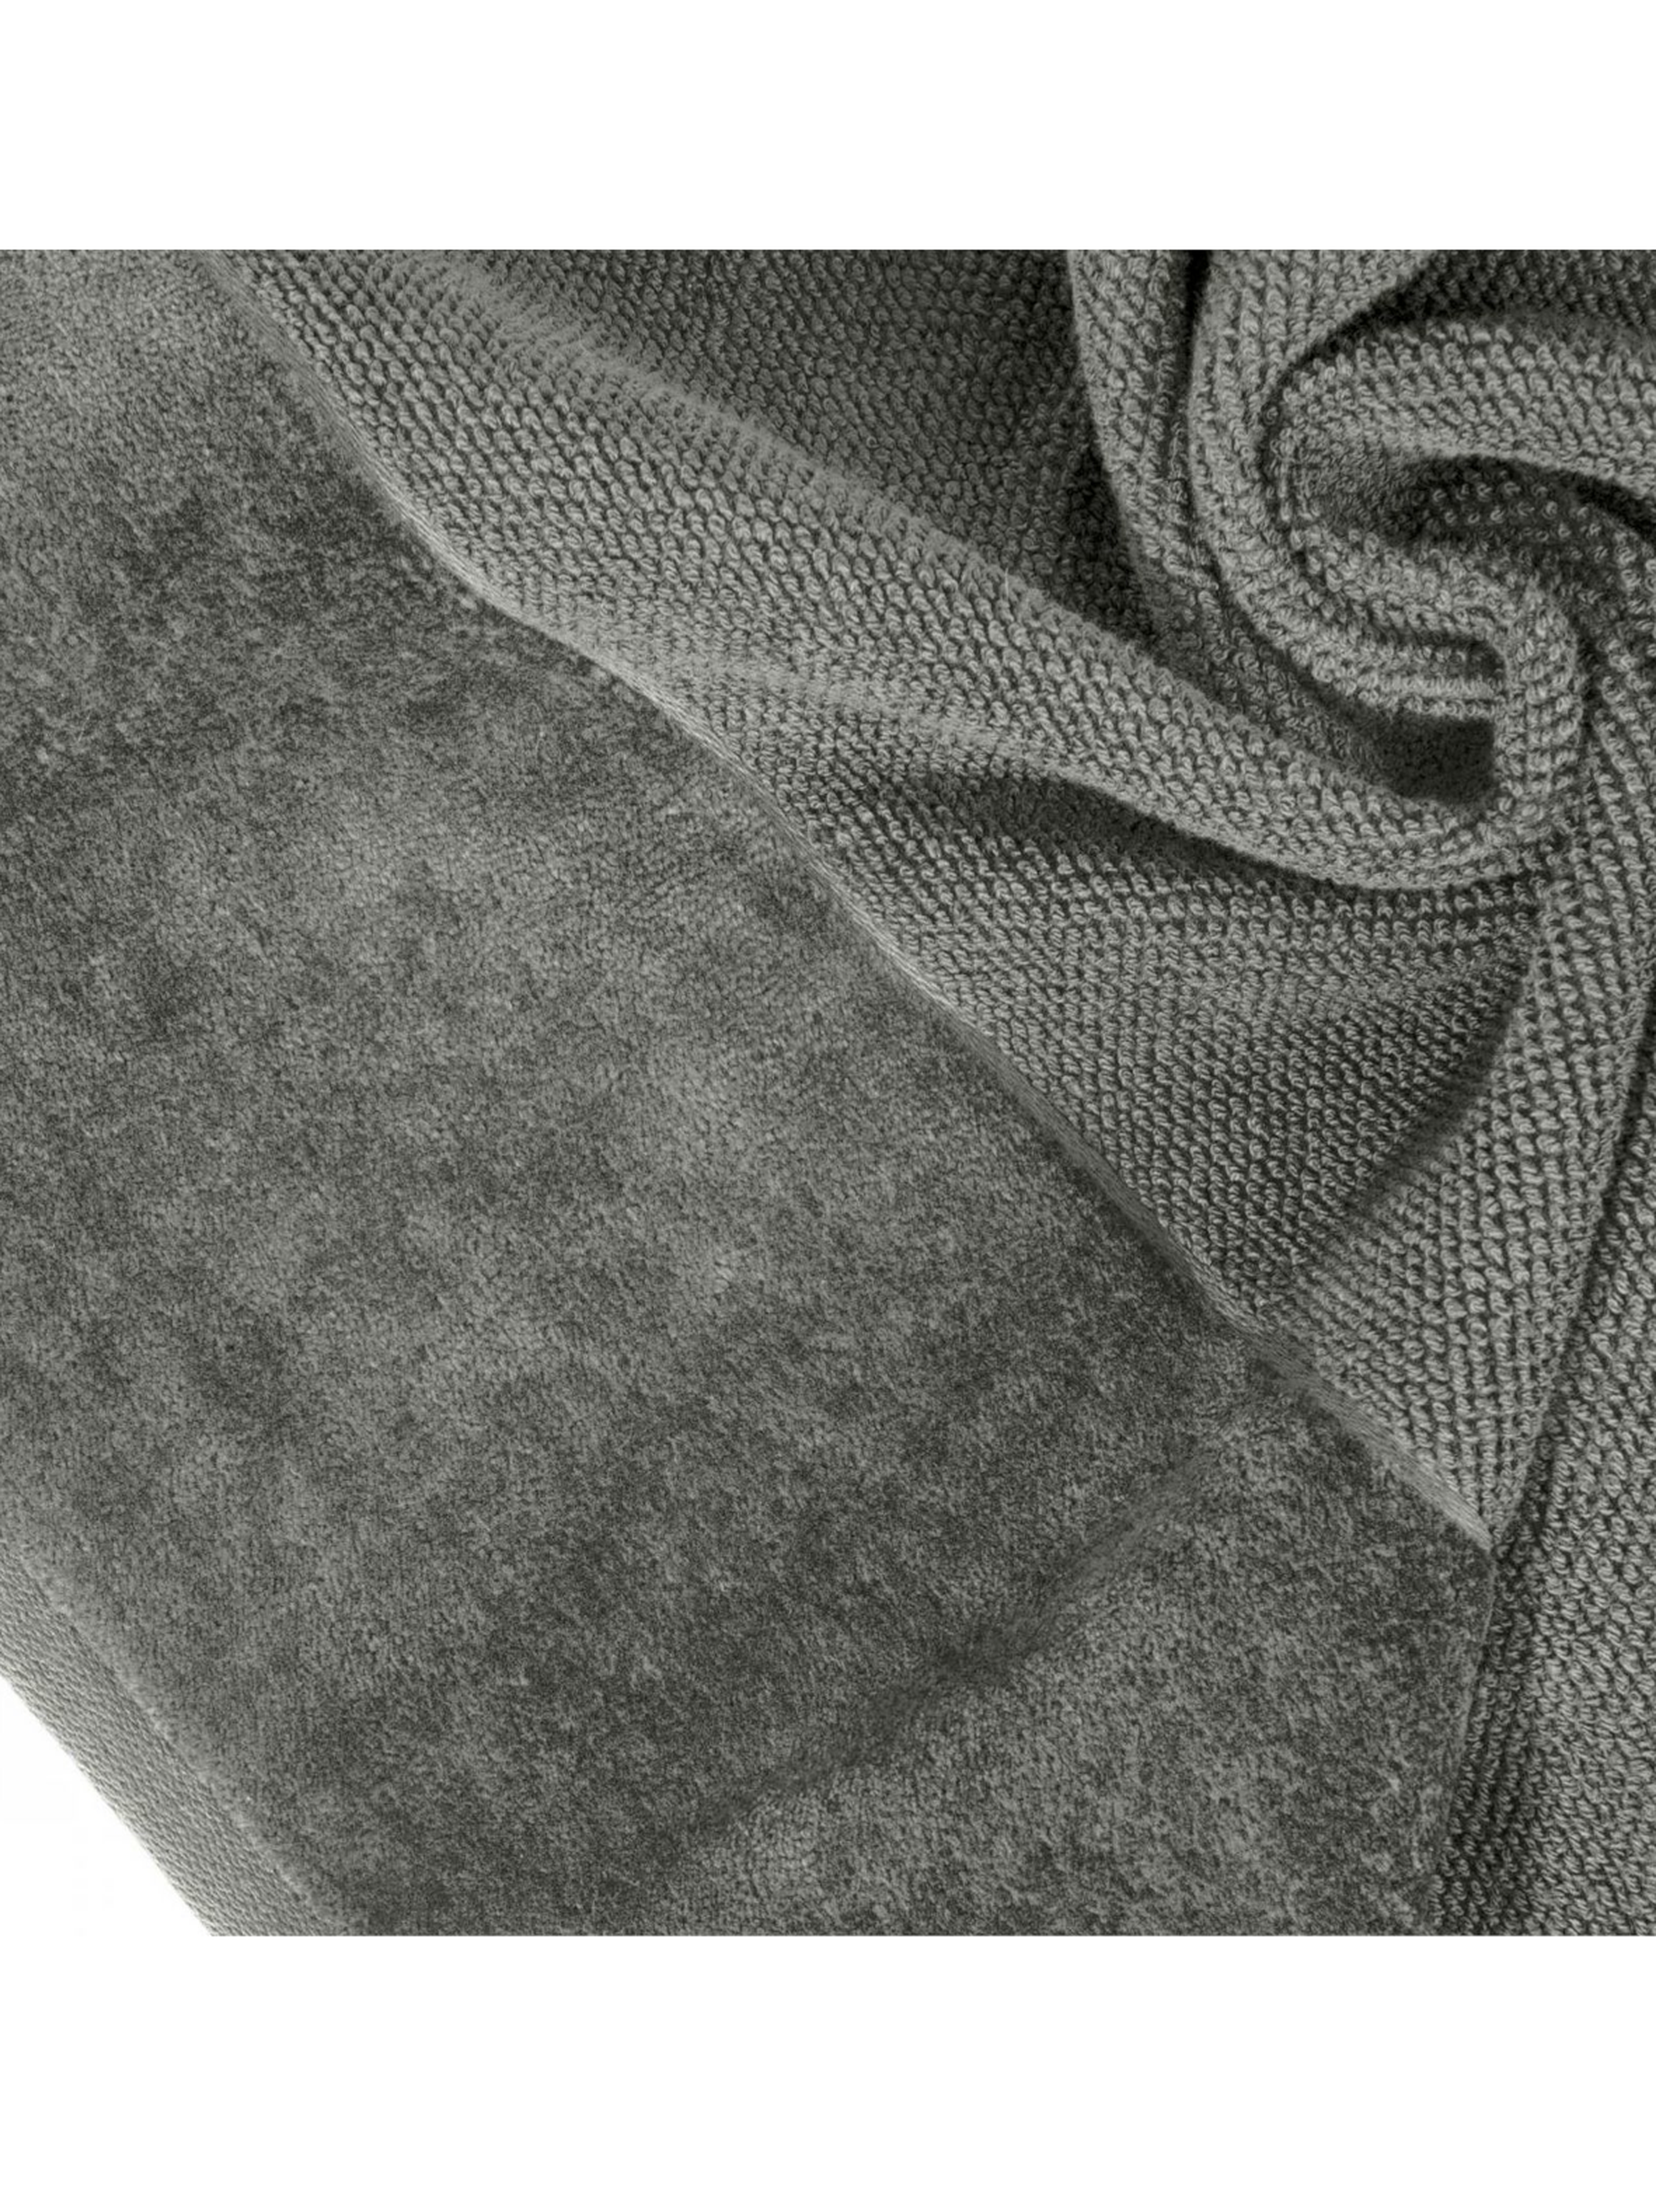 Szary ręcznik 70x140 cm z ozdobnym pasem